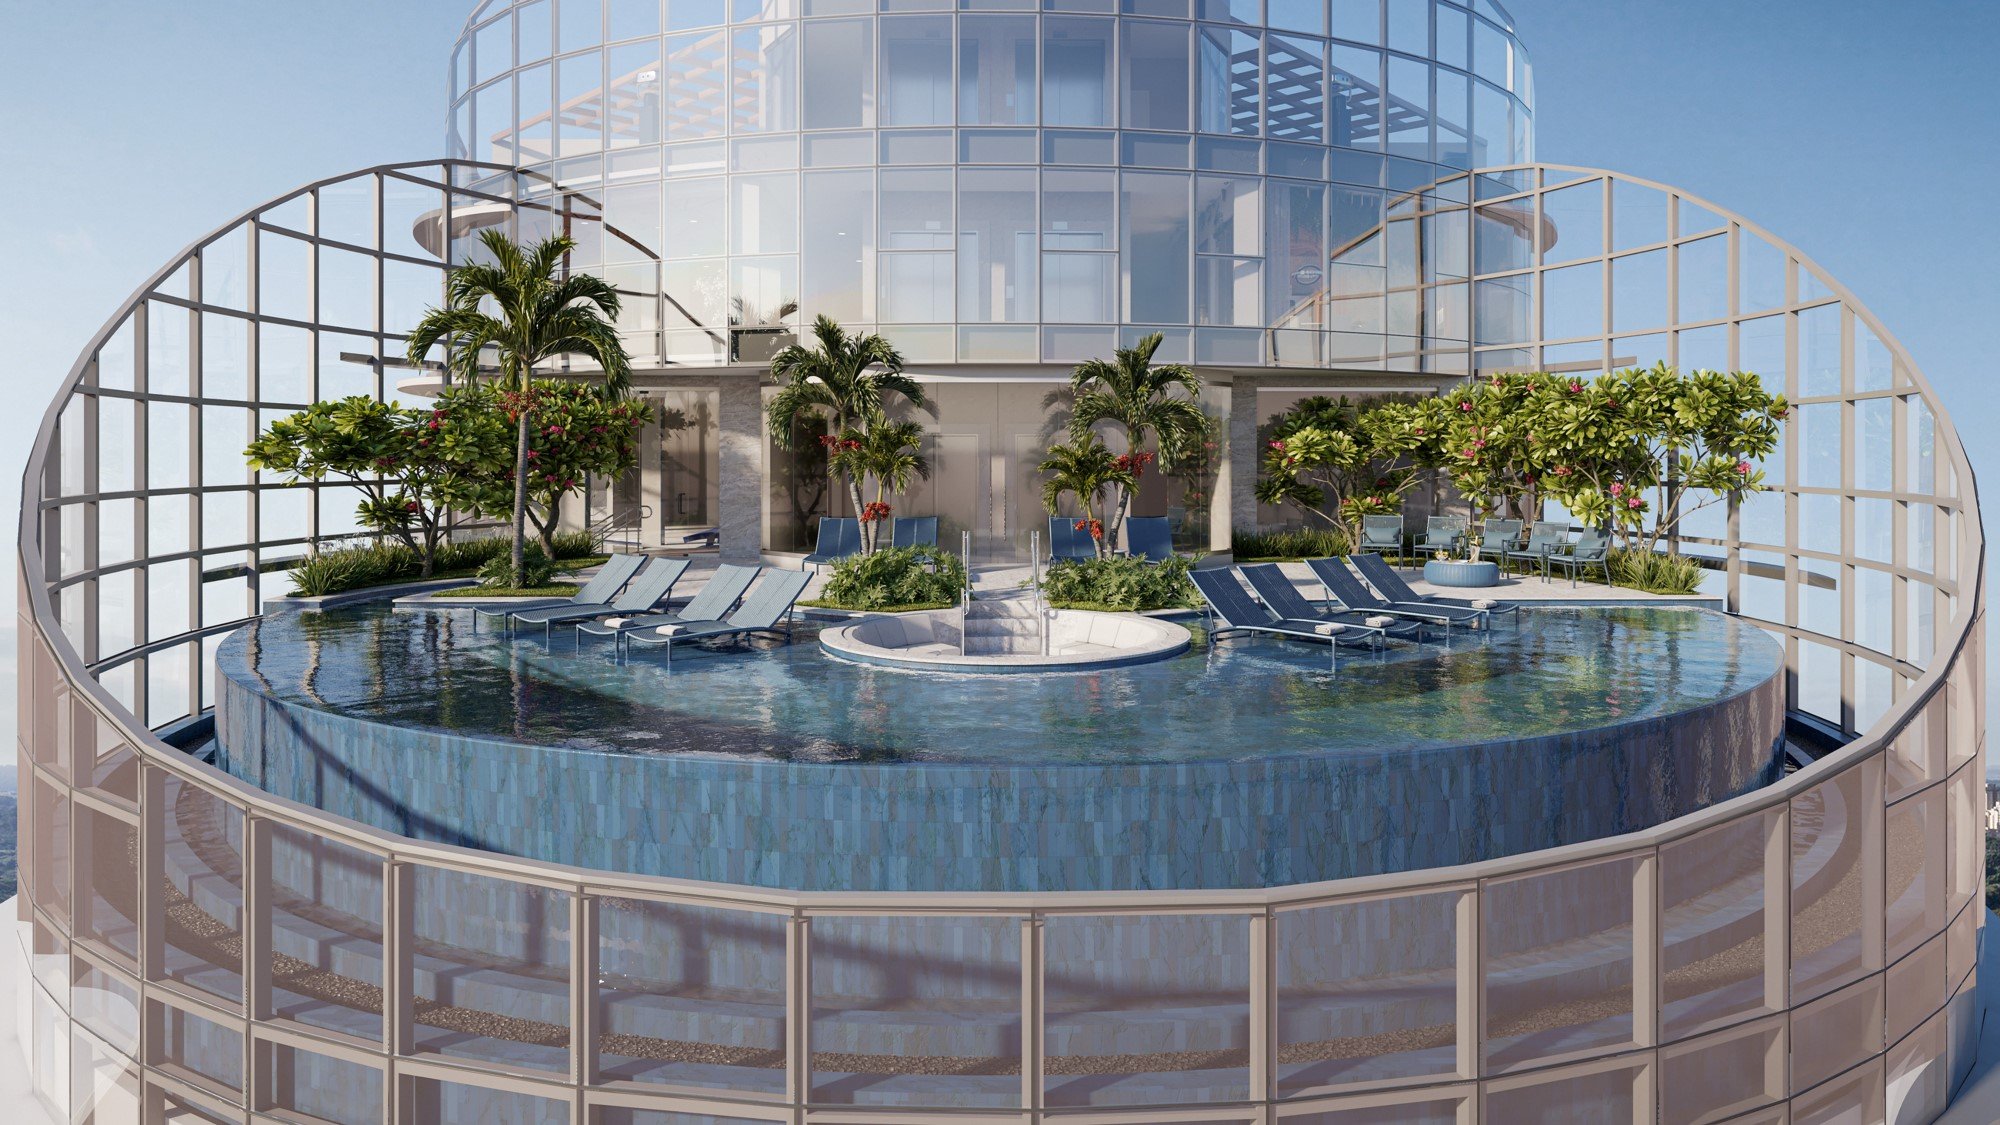 Com quase uma década de história, a Grand Construtora tem se destacado no mercado imobiliário capixaba com projetos ousados como o Taj Home Resort, em Vila Velha, e o Una Residence, em Vitória